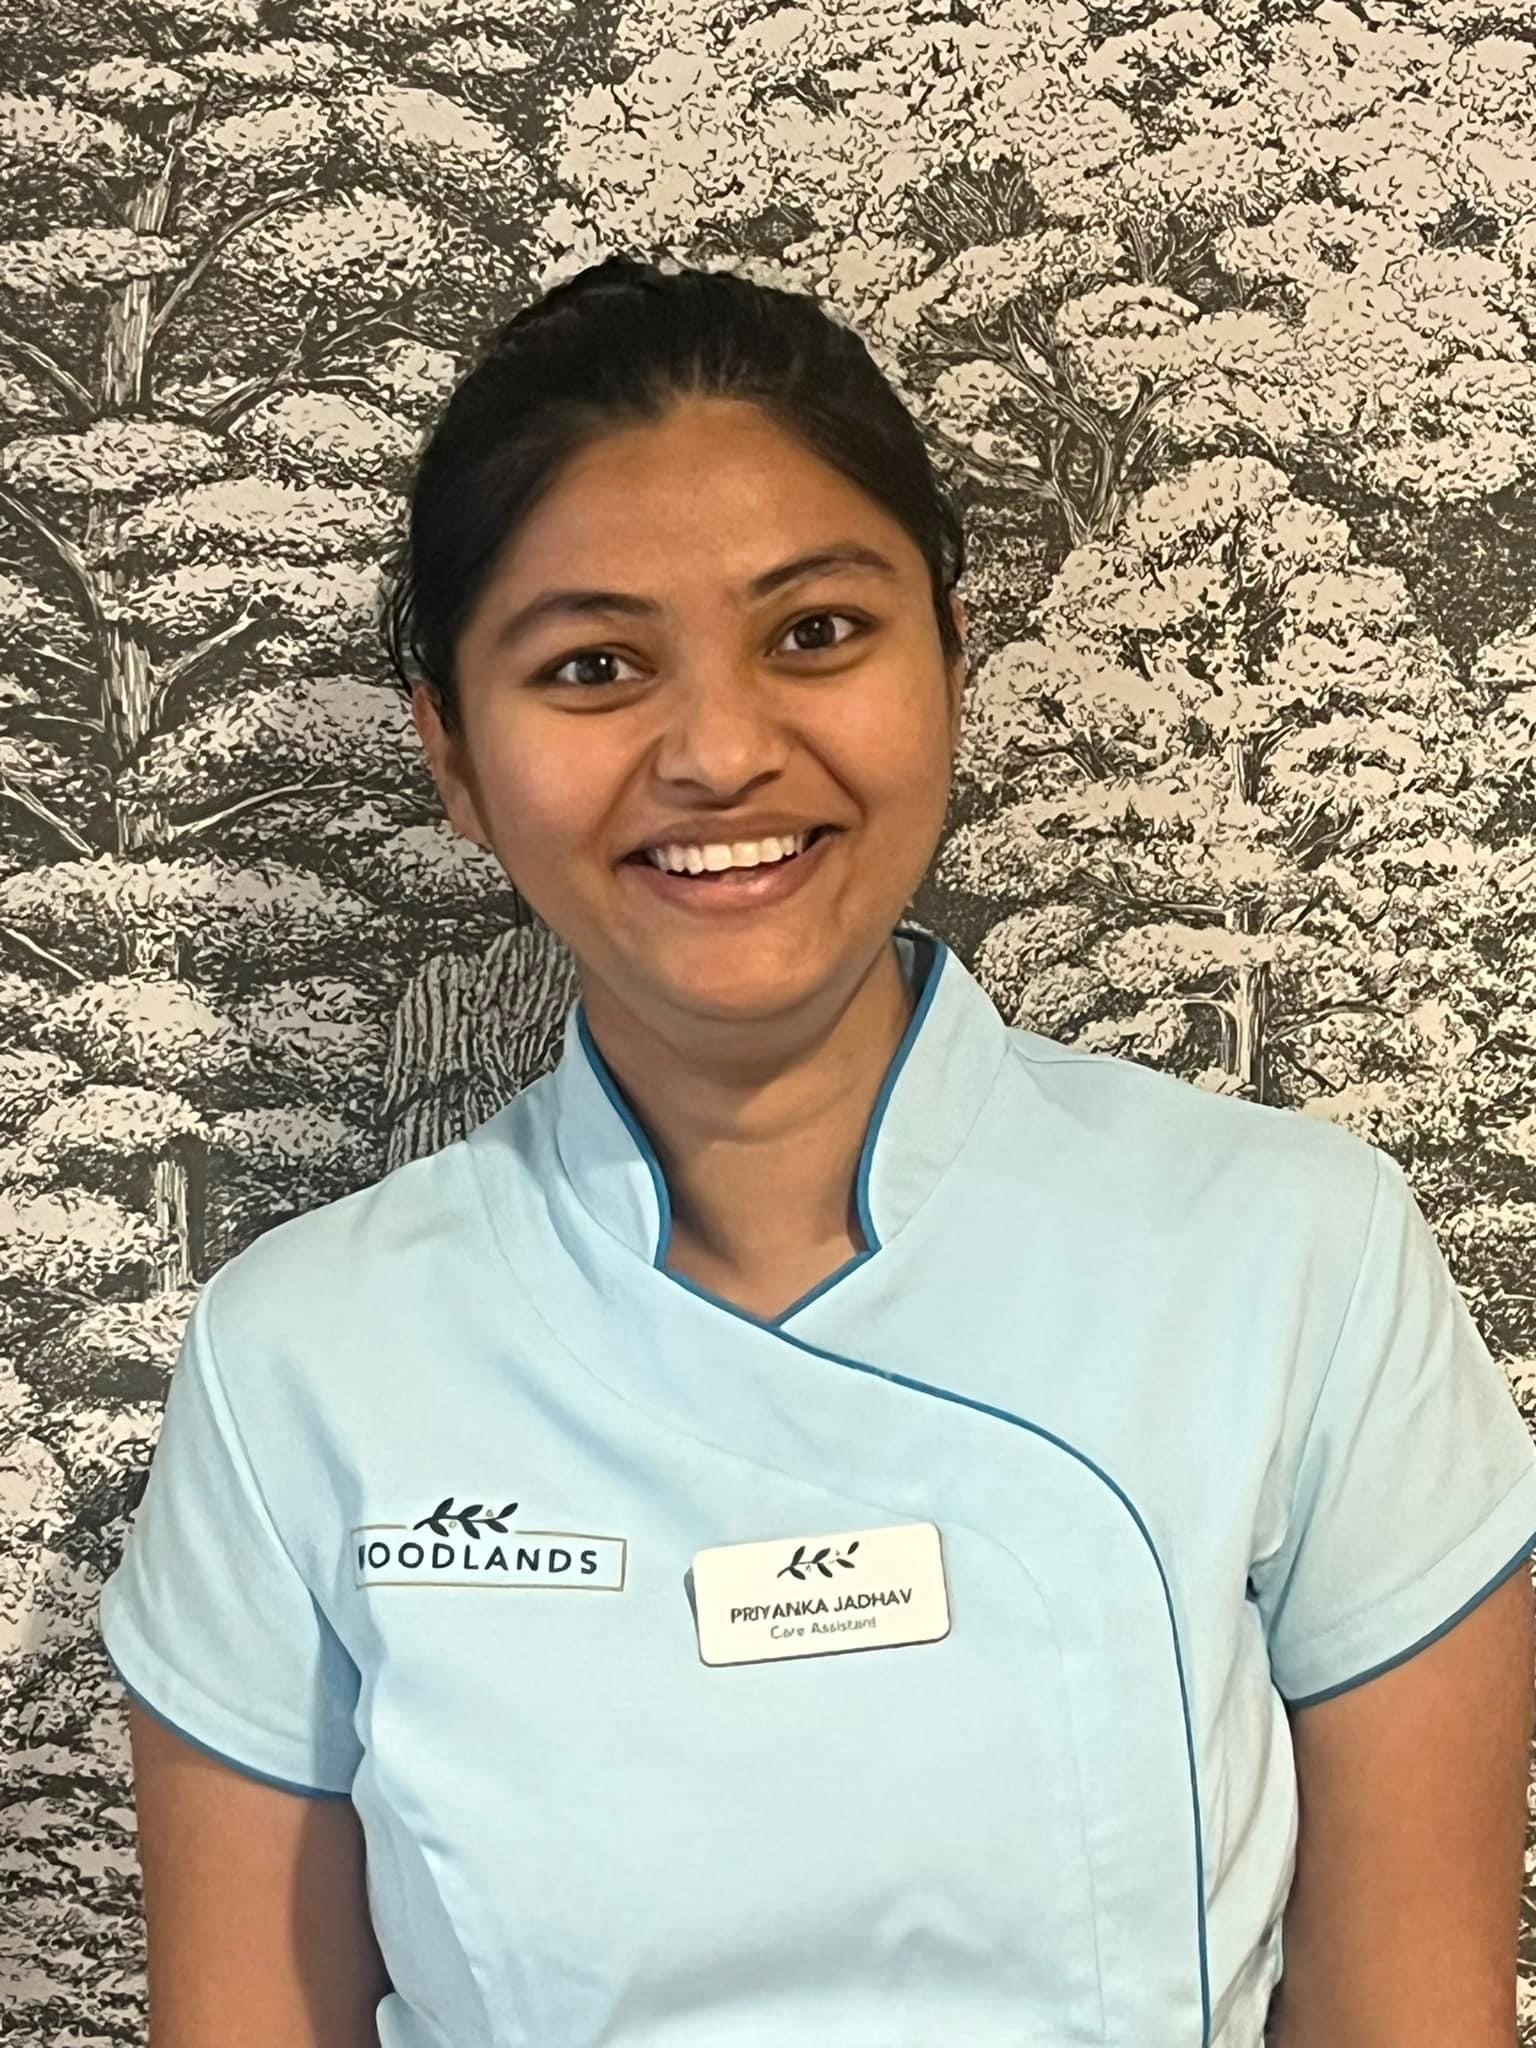 Priyanka Jadhav, Care Assistant at Woodlands